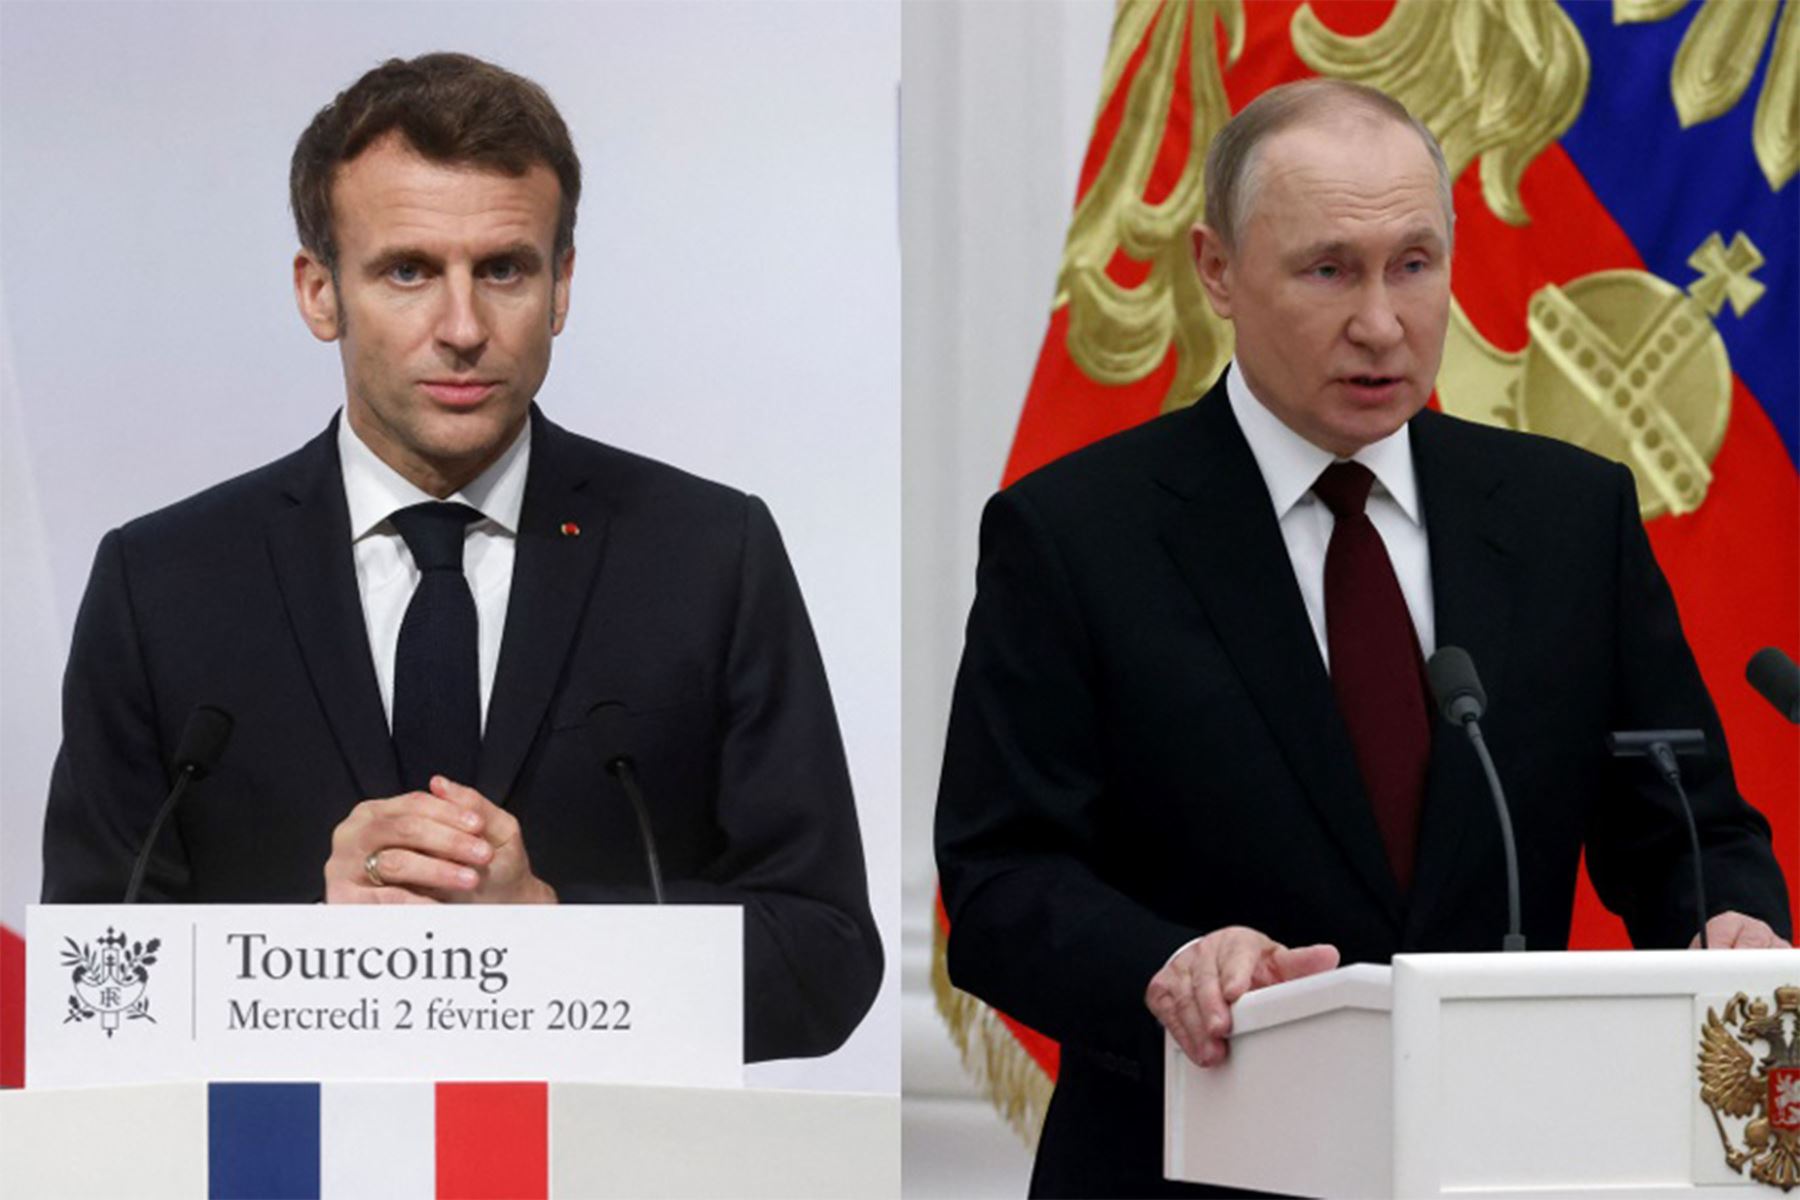 El presidente francés, Emmanuel Macron, y su homólogo ruso, Vladimir Putin, dialogarán telefónicamente. Foto: AFP